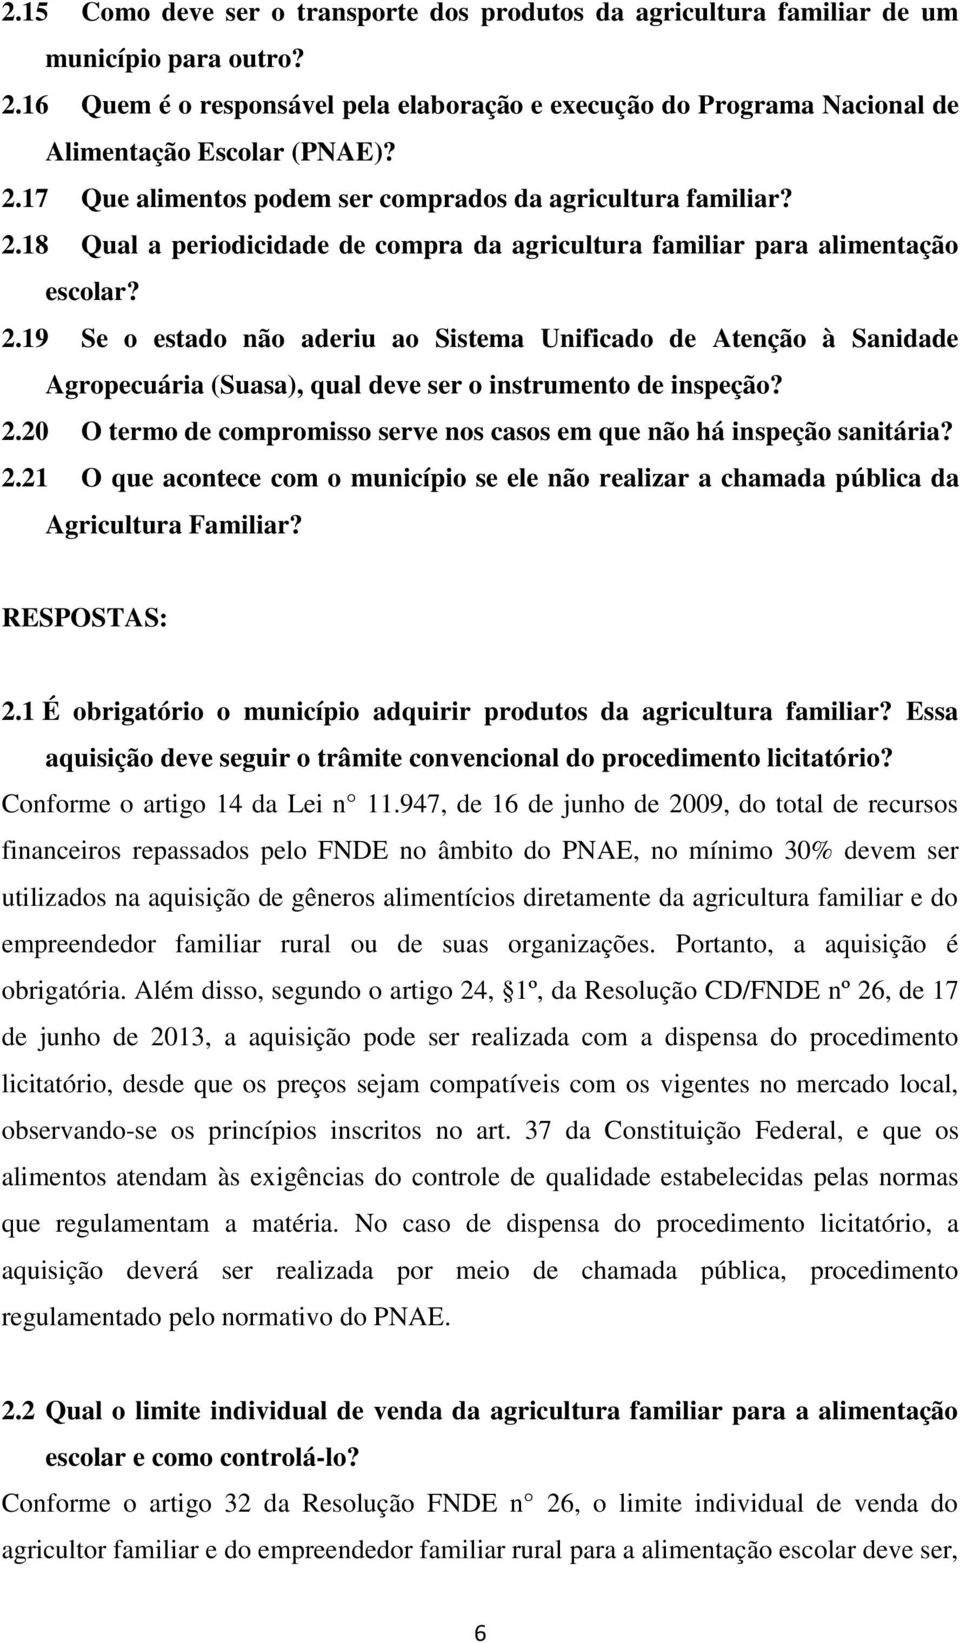 2.19 Se o estado não aderiu ao Sistema Unificado de Atenção à Sanidade Agropecuária (Suasa), qual deve ser o instrumento de inspeção? 2.